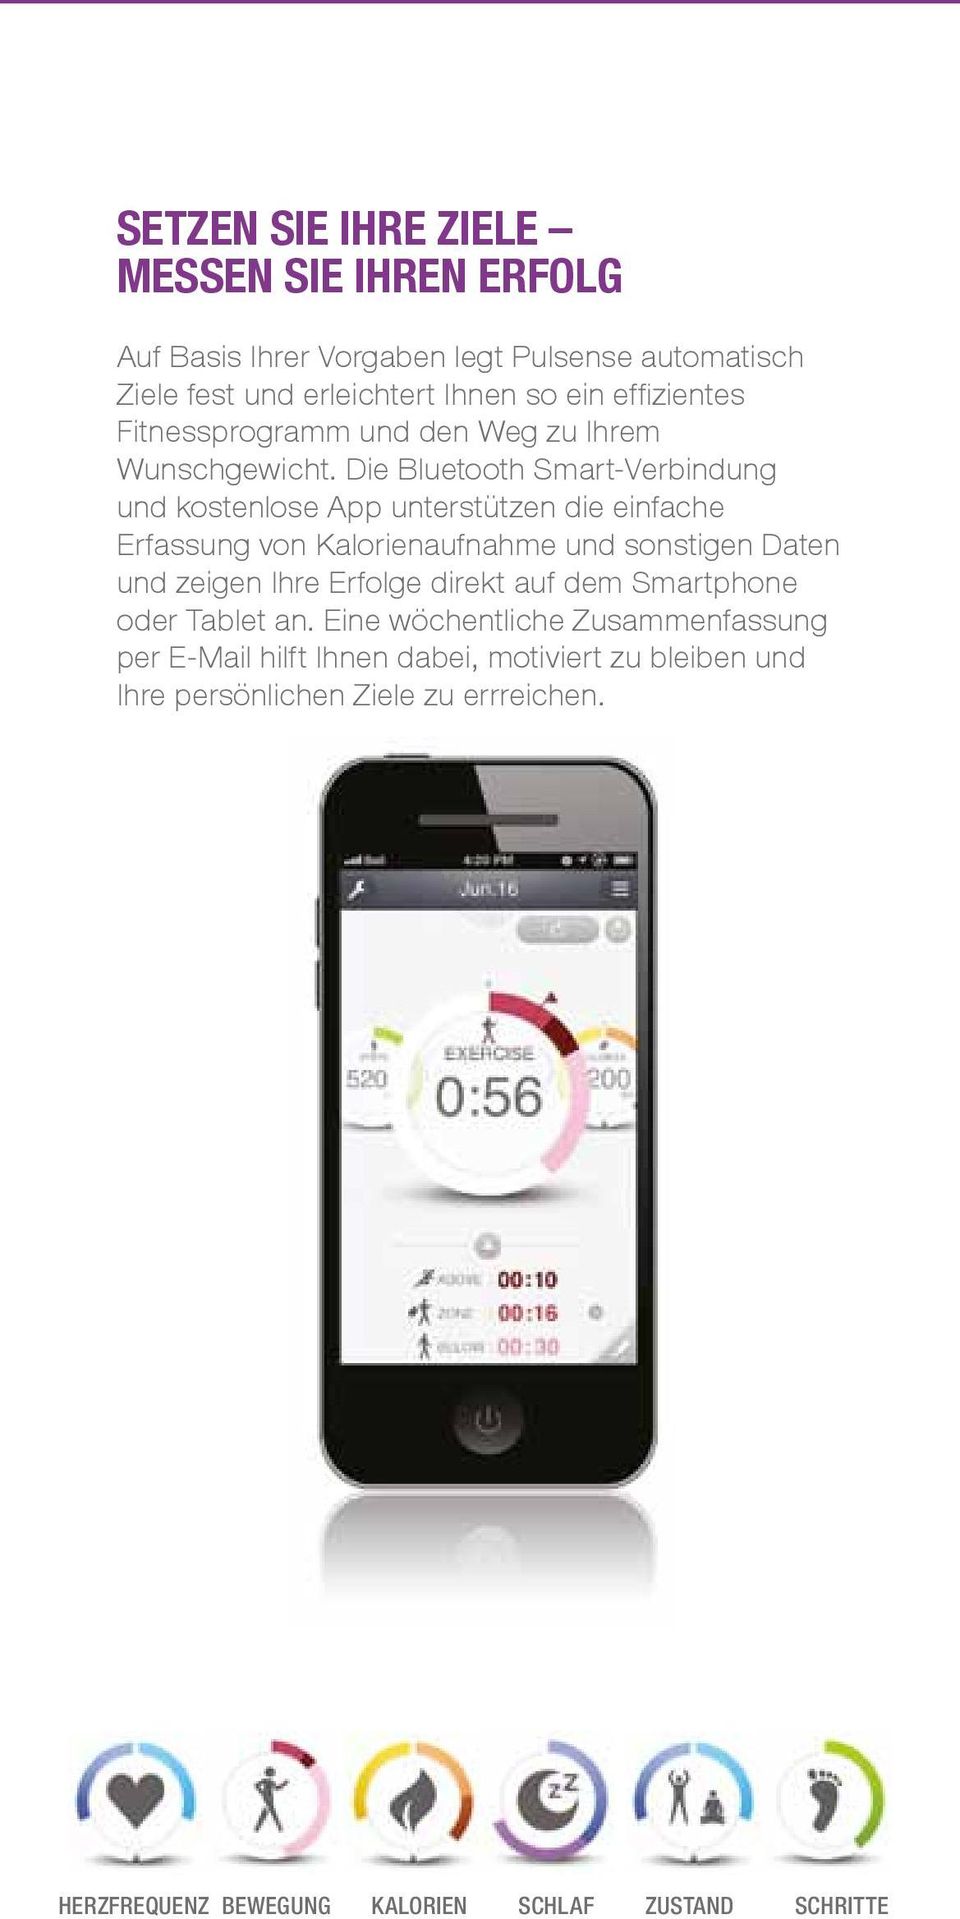 Die Bluetooth Smart-Verbindung und kostenlose App unterstützen die einfache Erfassung von Kalorienaufnahme und sonstigen Daten und zeigen Ihre